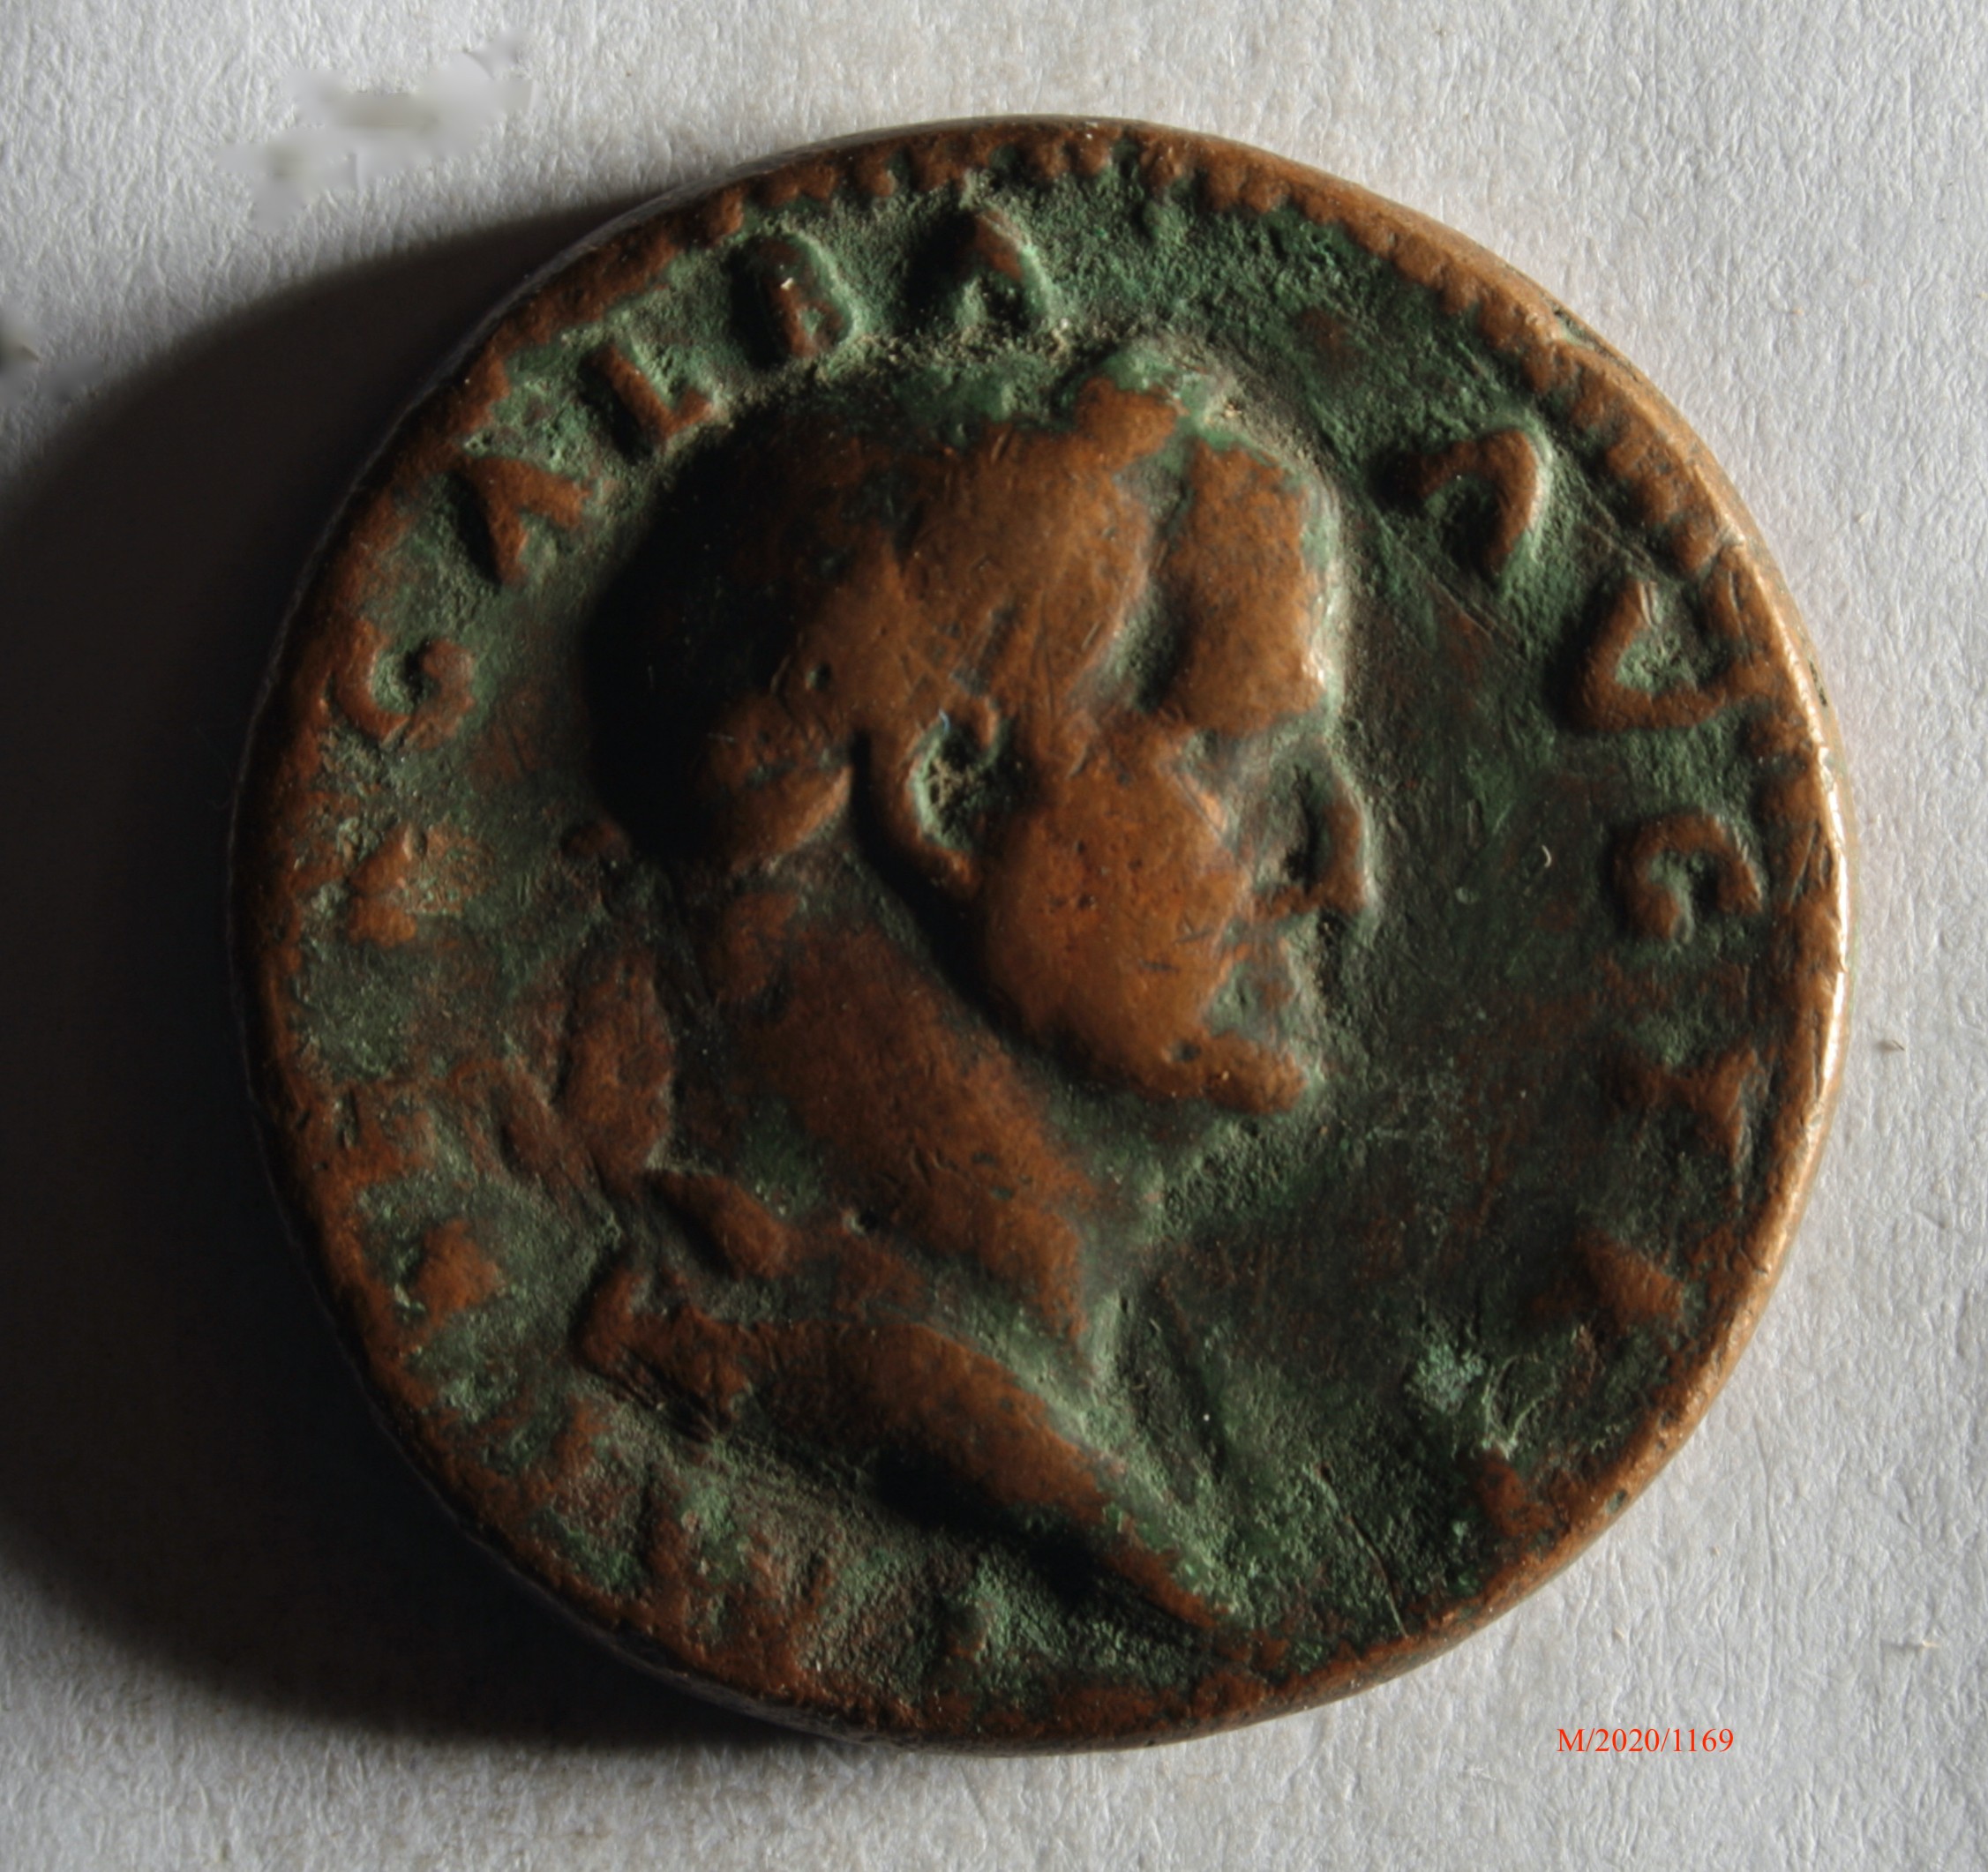 Römische Münze, Nominal Sesterz, Prägeherr Galba, Prägeort nicht bestimmbar, Fälschung (Museumsgesellschaft Bad Dürkheim e.V. CC BY-NC-SA)